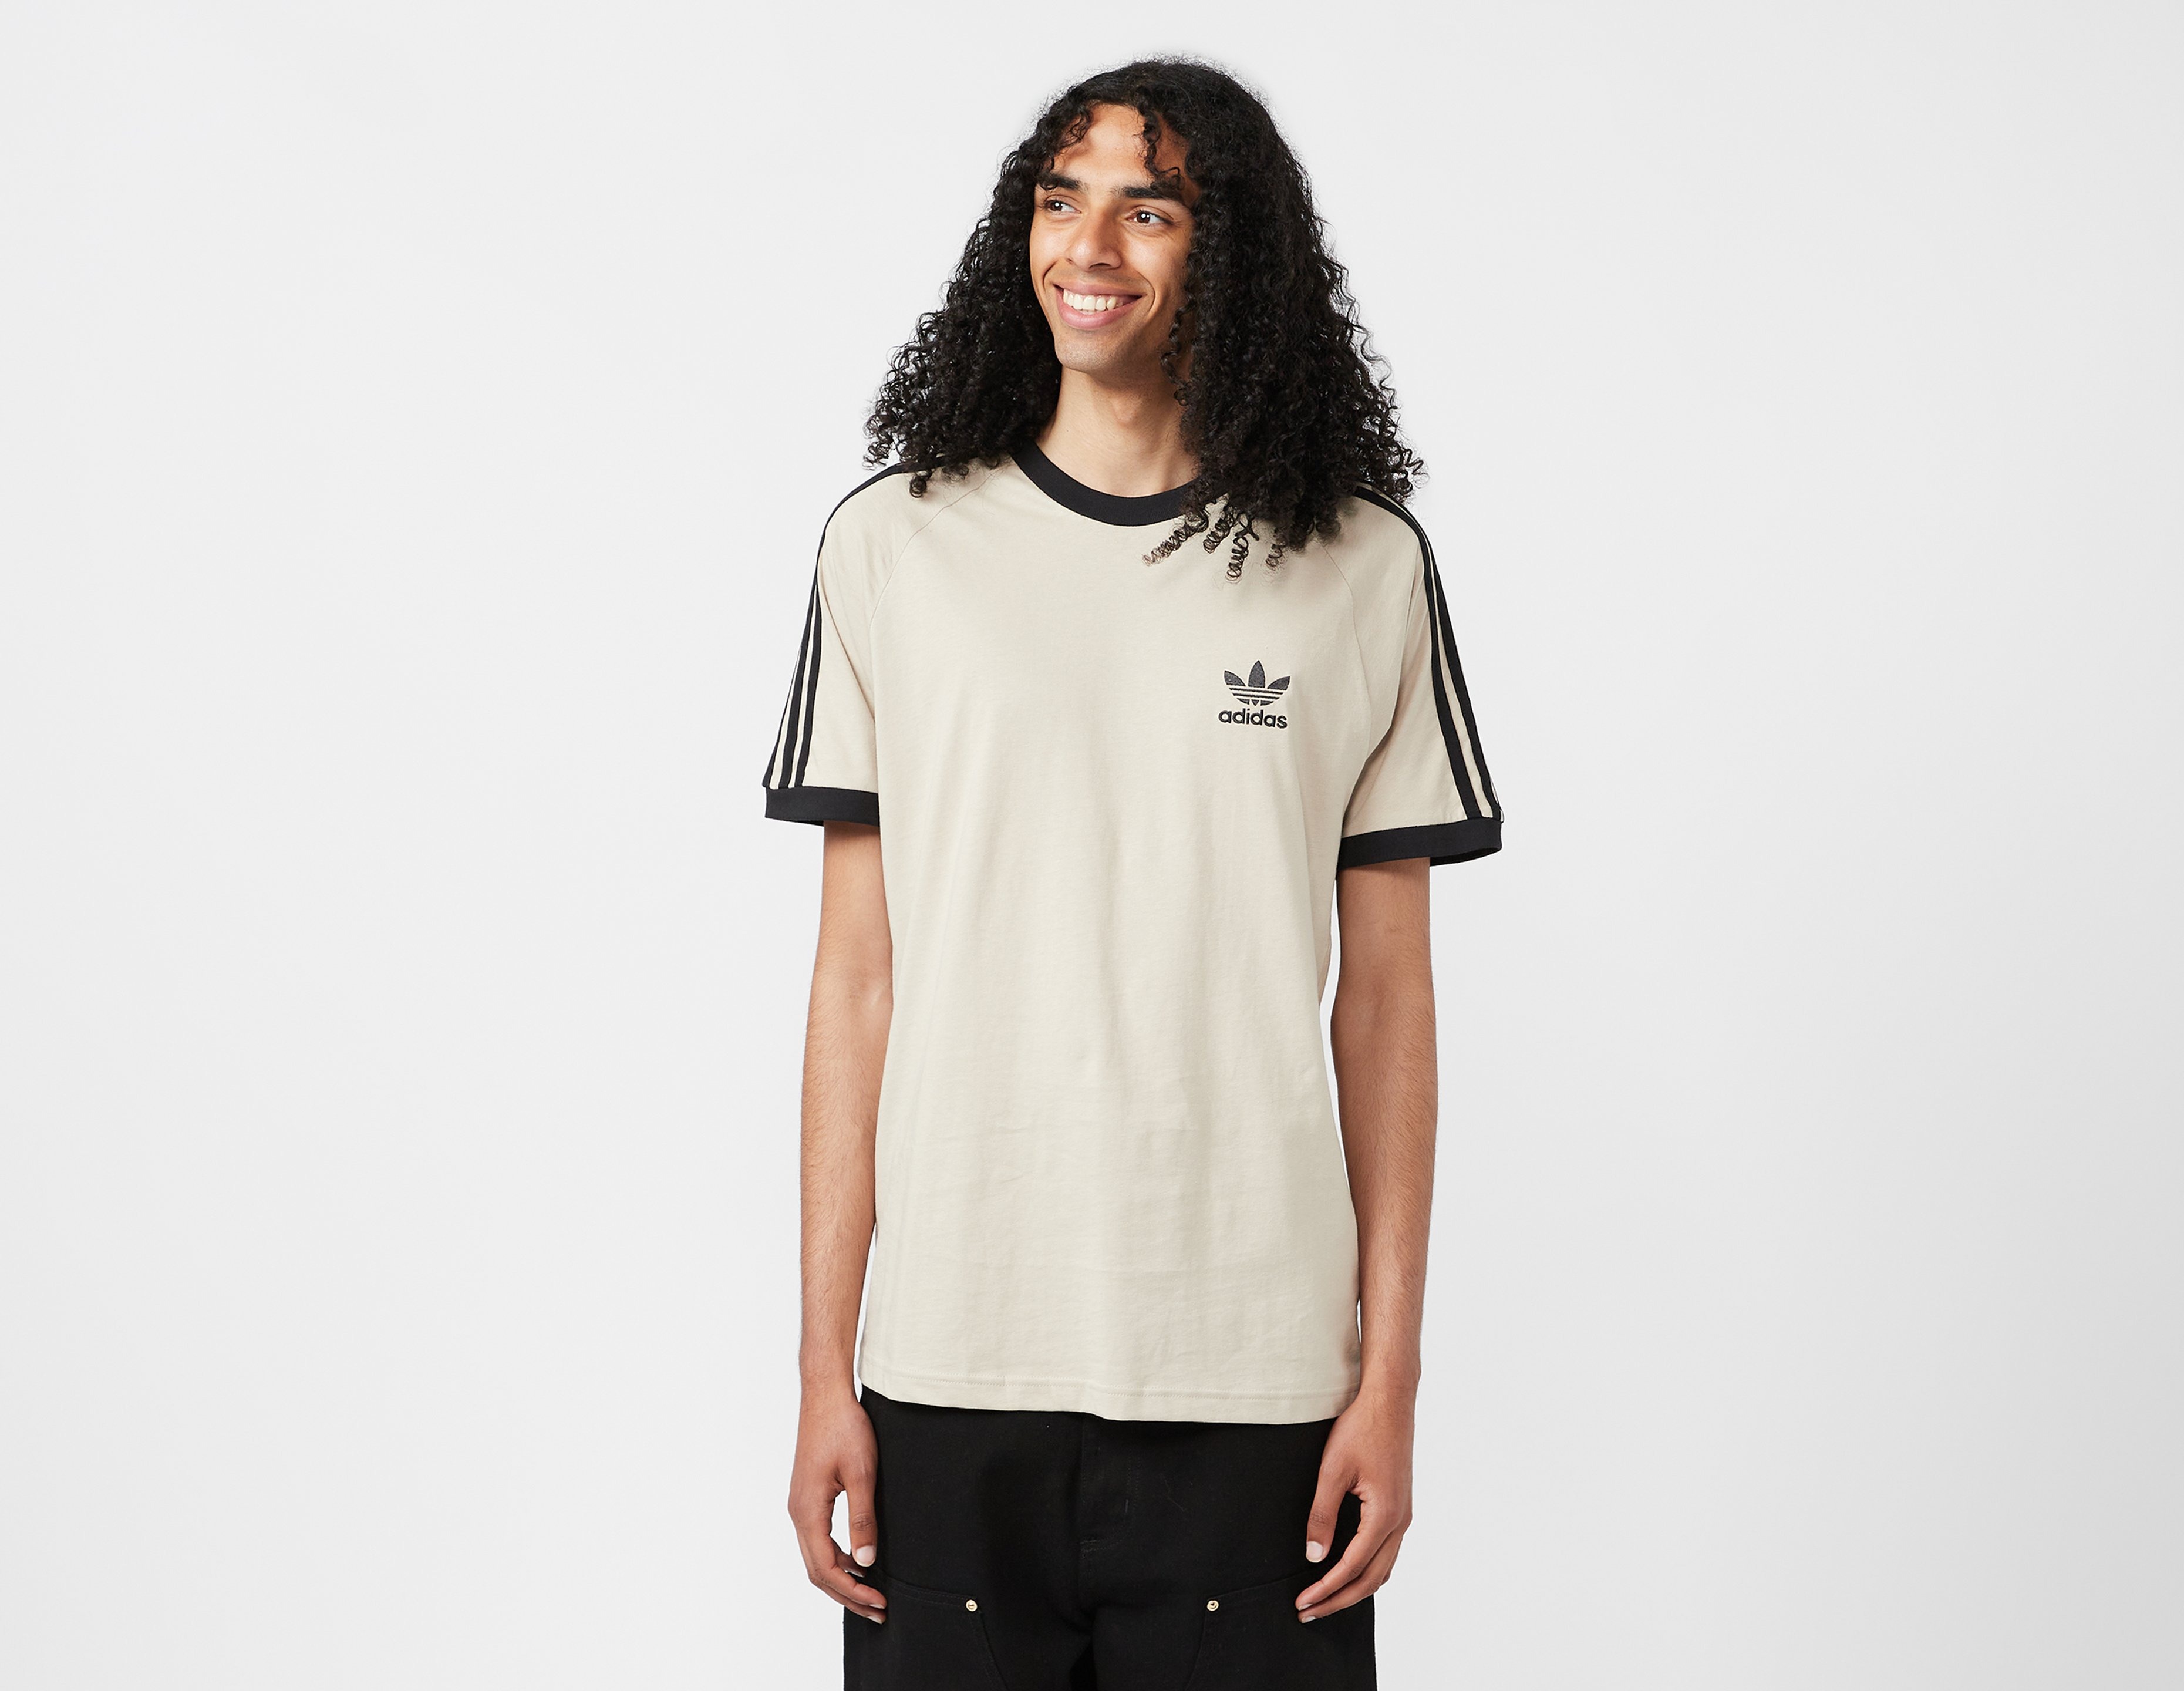 Vleien Lach volgorde Wit adidas Originals 3-Stripes California T-Shirt- size? Nederland